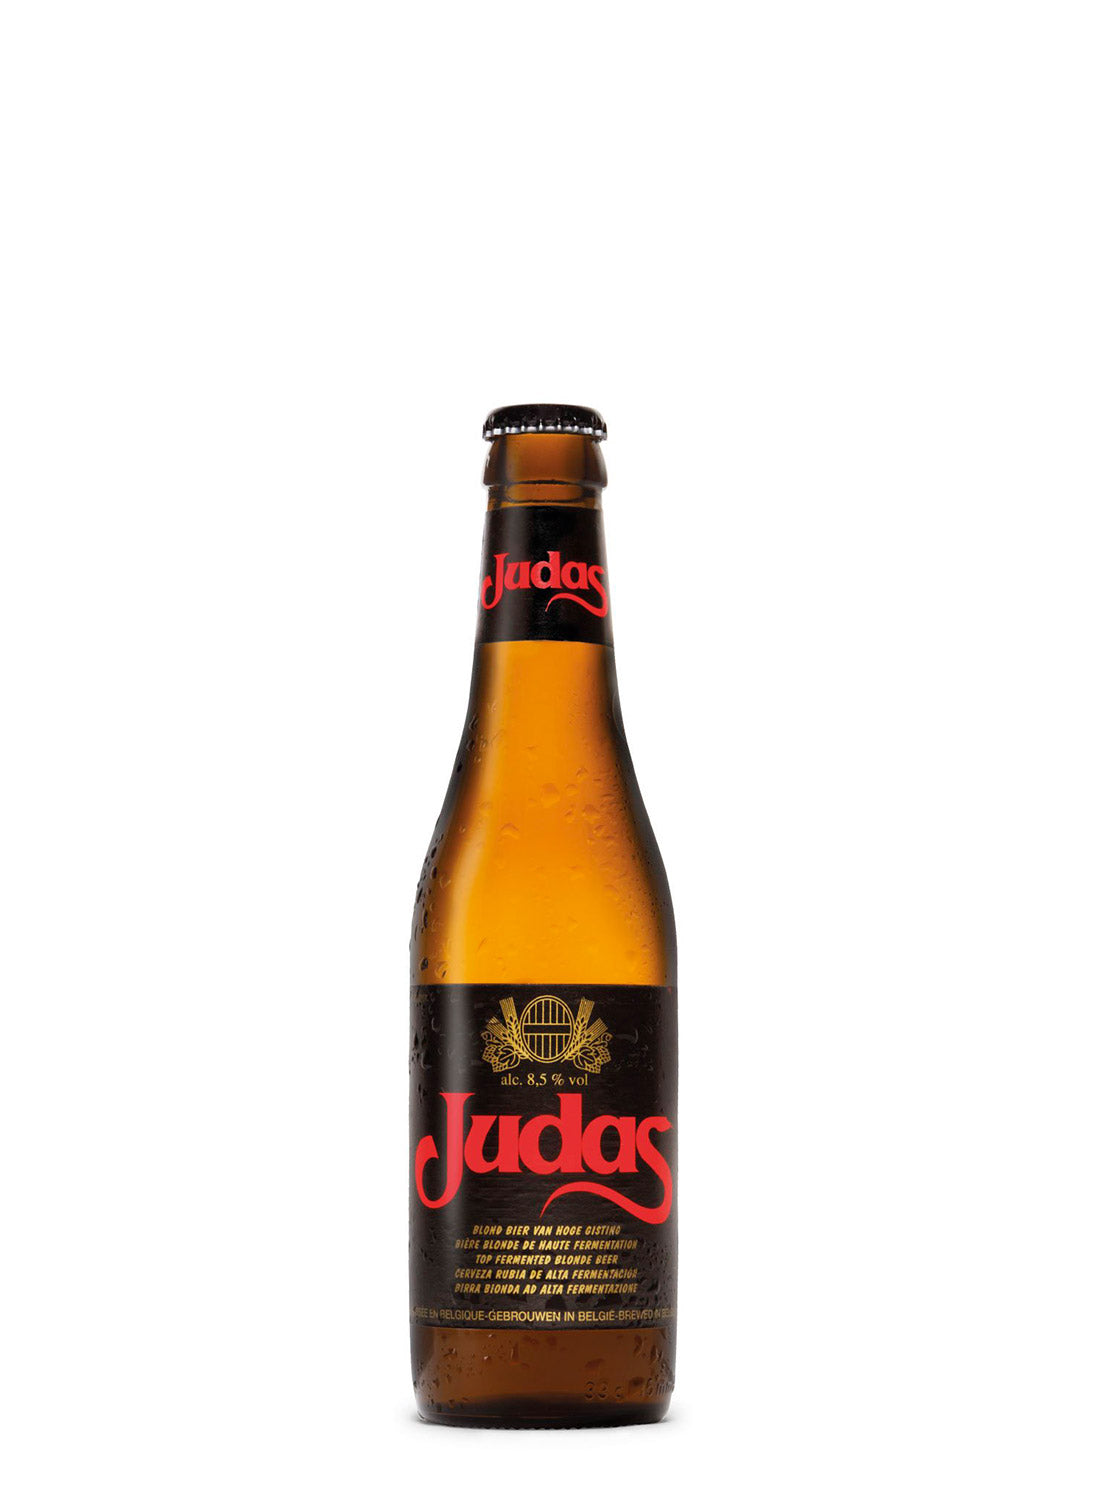 Cerveza Judas pack 1/3